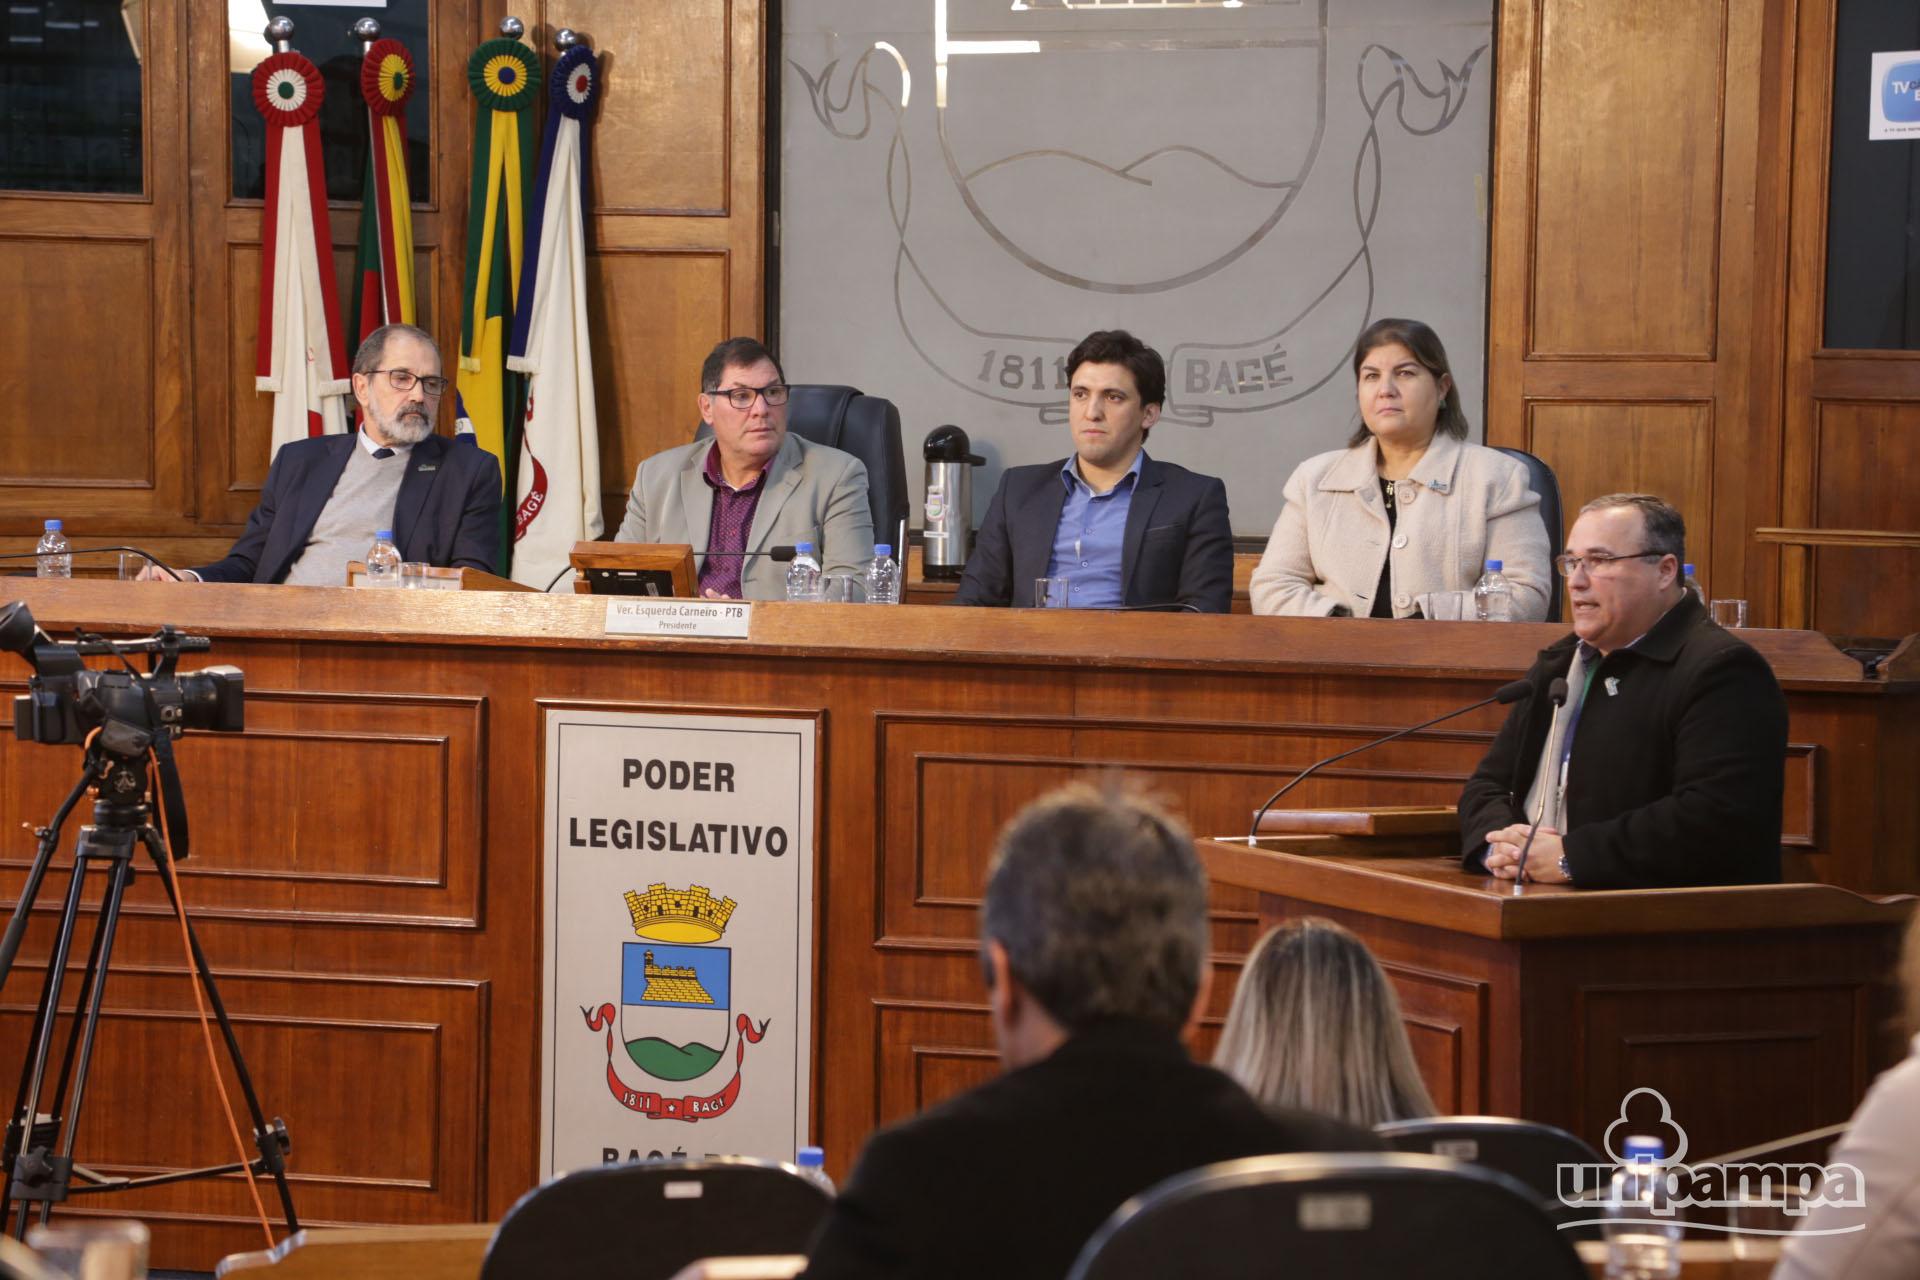 Na Sessão Especial da Câmara de Vereadores a educação e a Unipampa foram temas de discussão. (Fotos: Ronaldo Estevam)